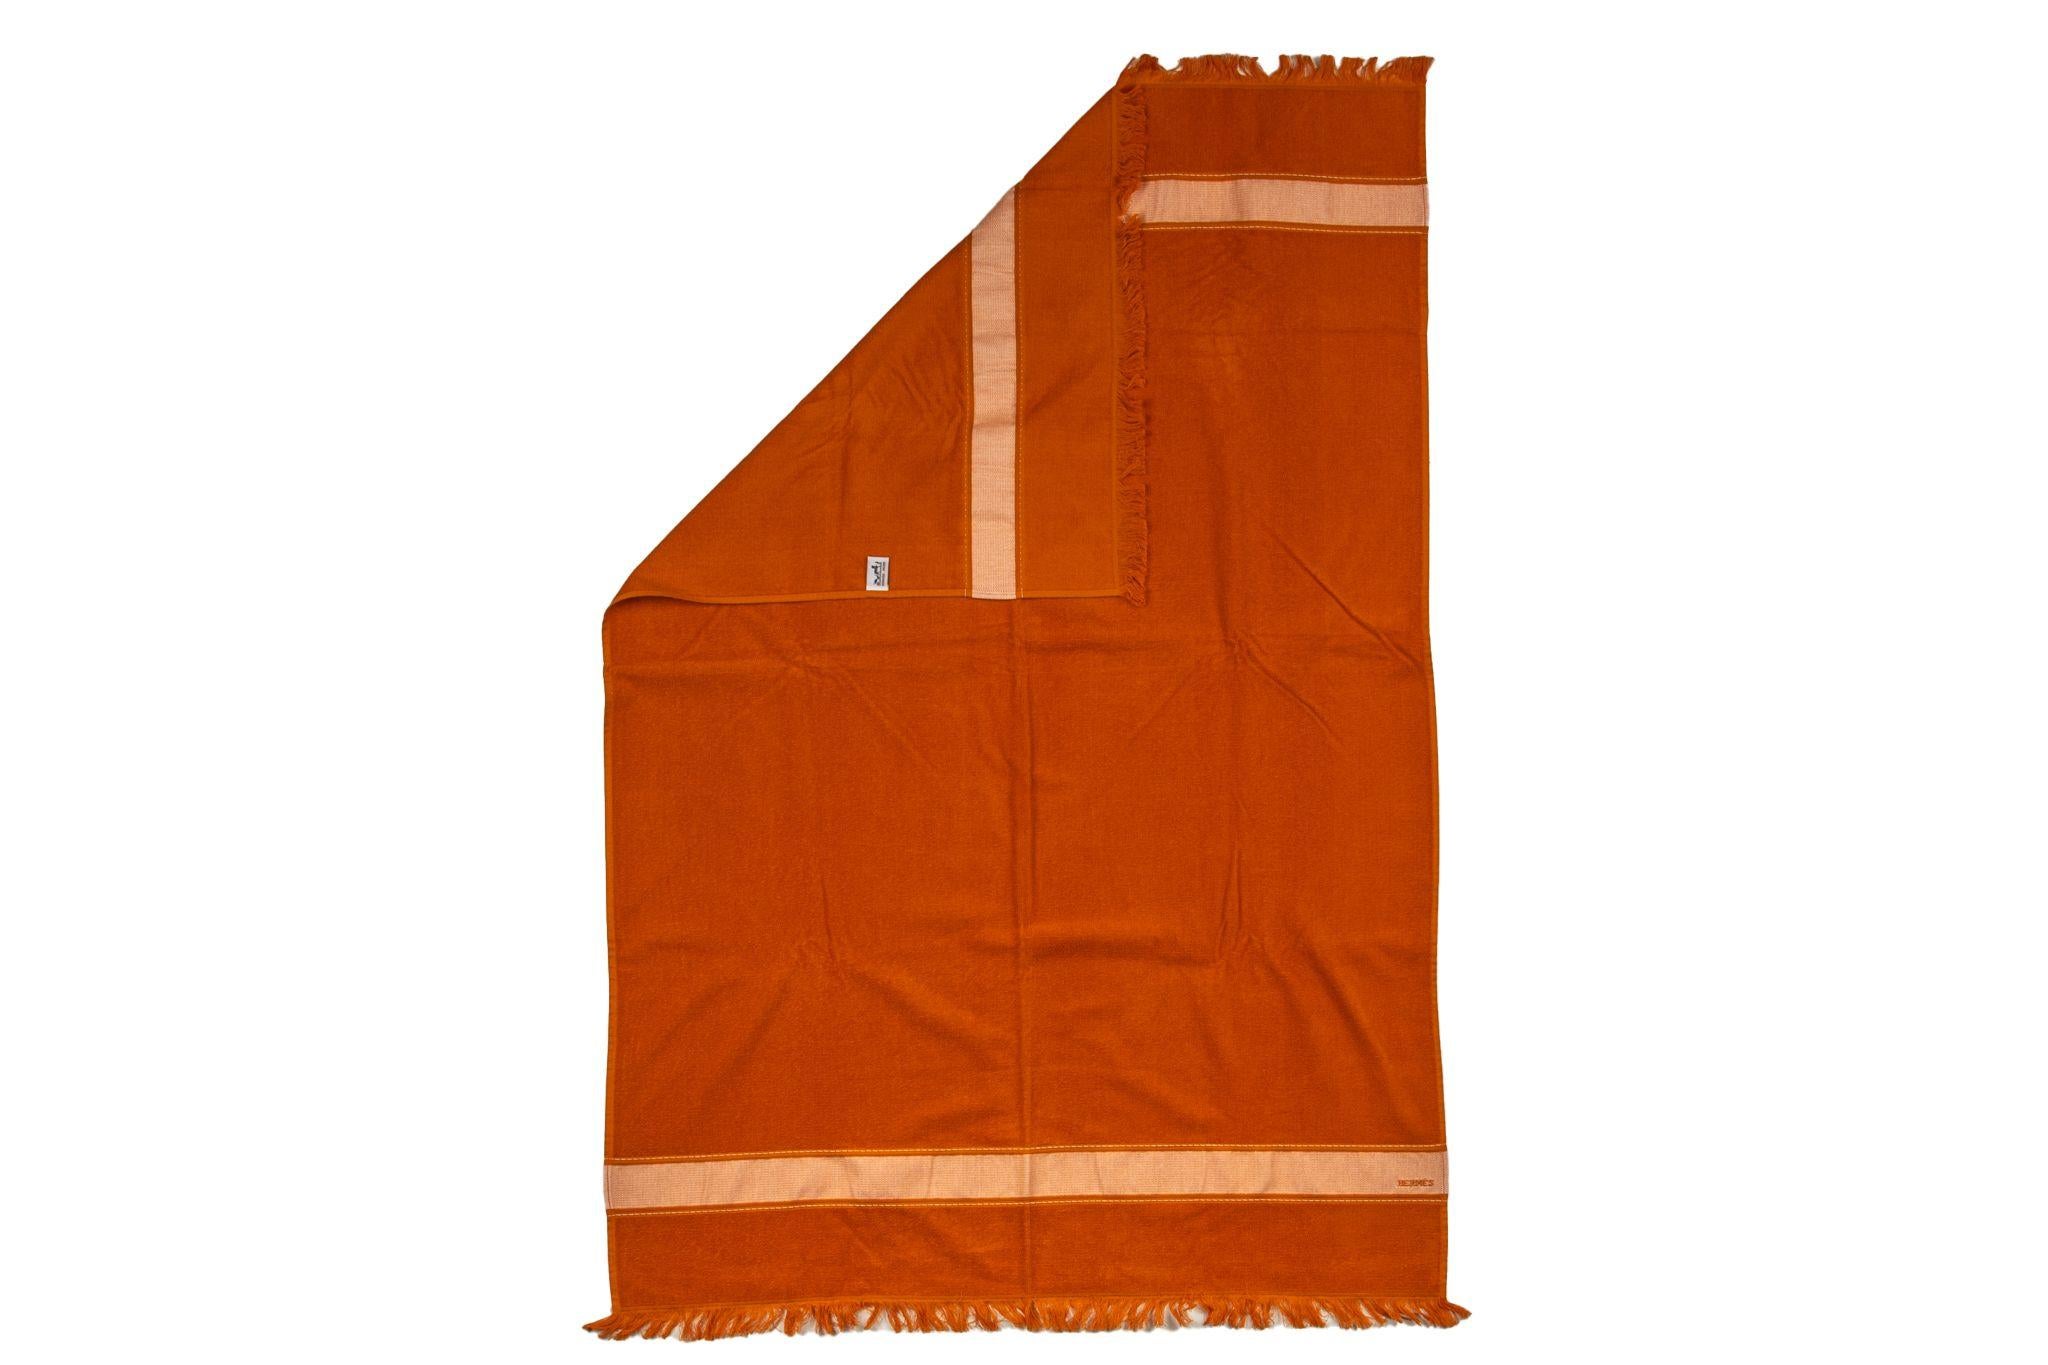 Hermès neues rostfarbenes Strandtuch aus Baumwolle mit Fransen. Ne win unbenutzte Bedingung.
Wird ohne Box geliefert.